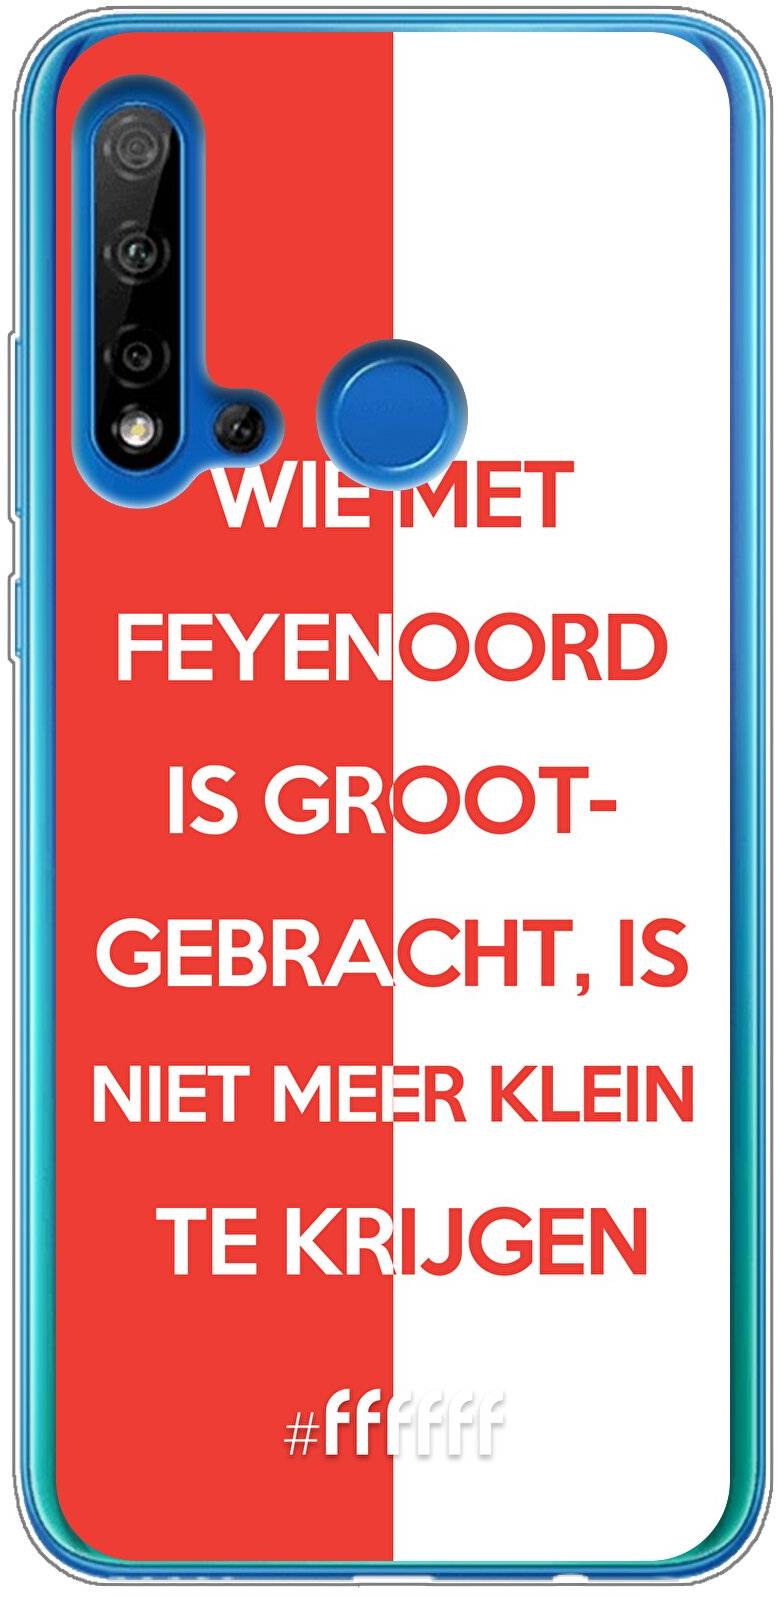 Feyenoord - Grootgebracht P20 Lite (2019)